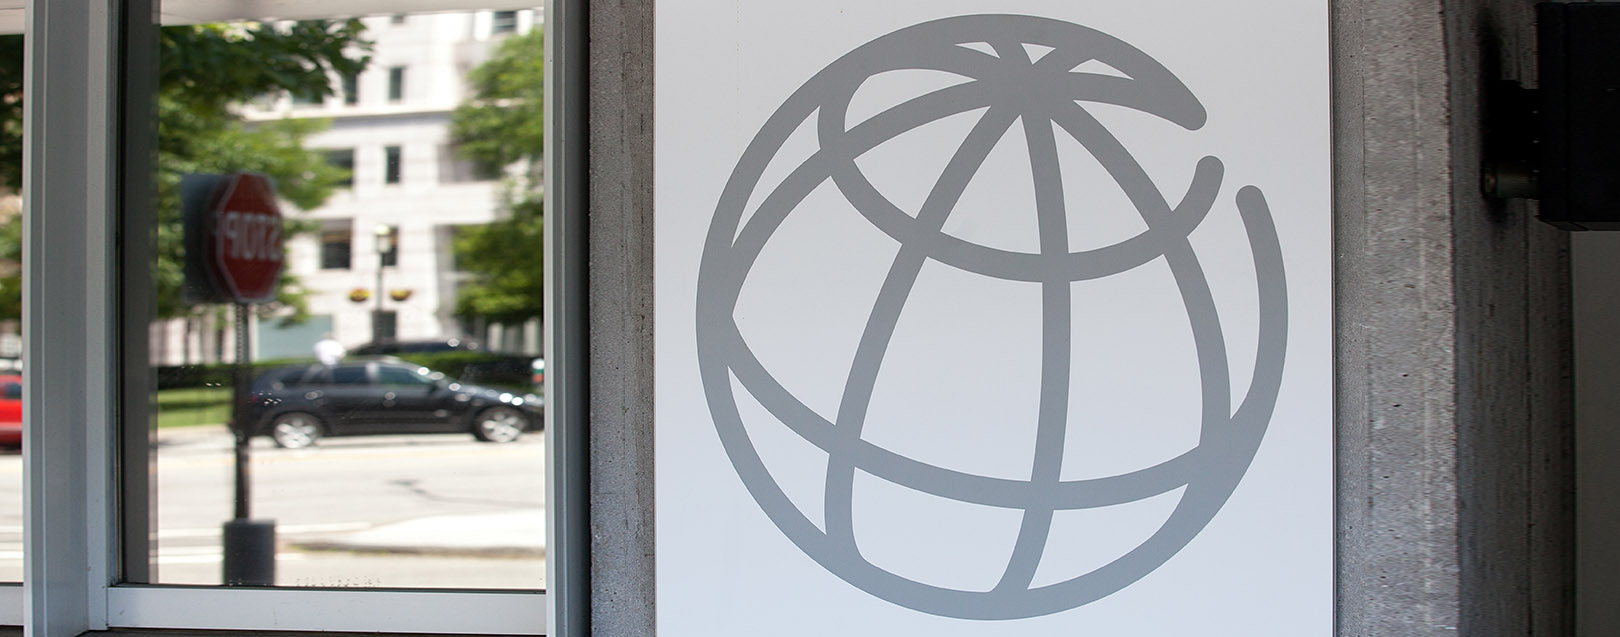 World Bank unanimously reappoints President Jim Yong Kim